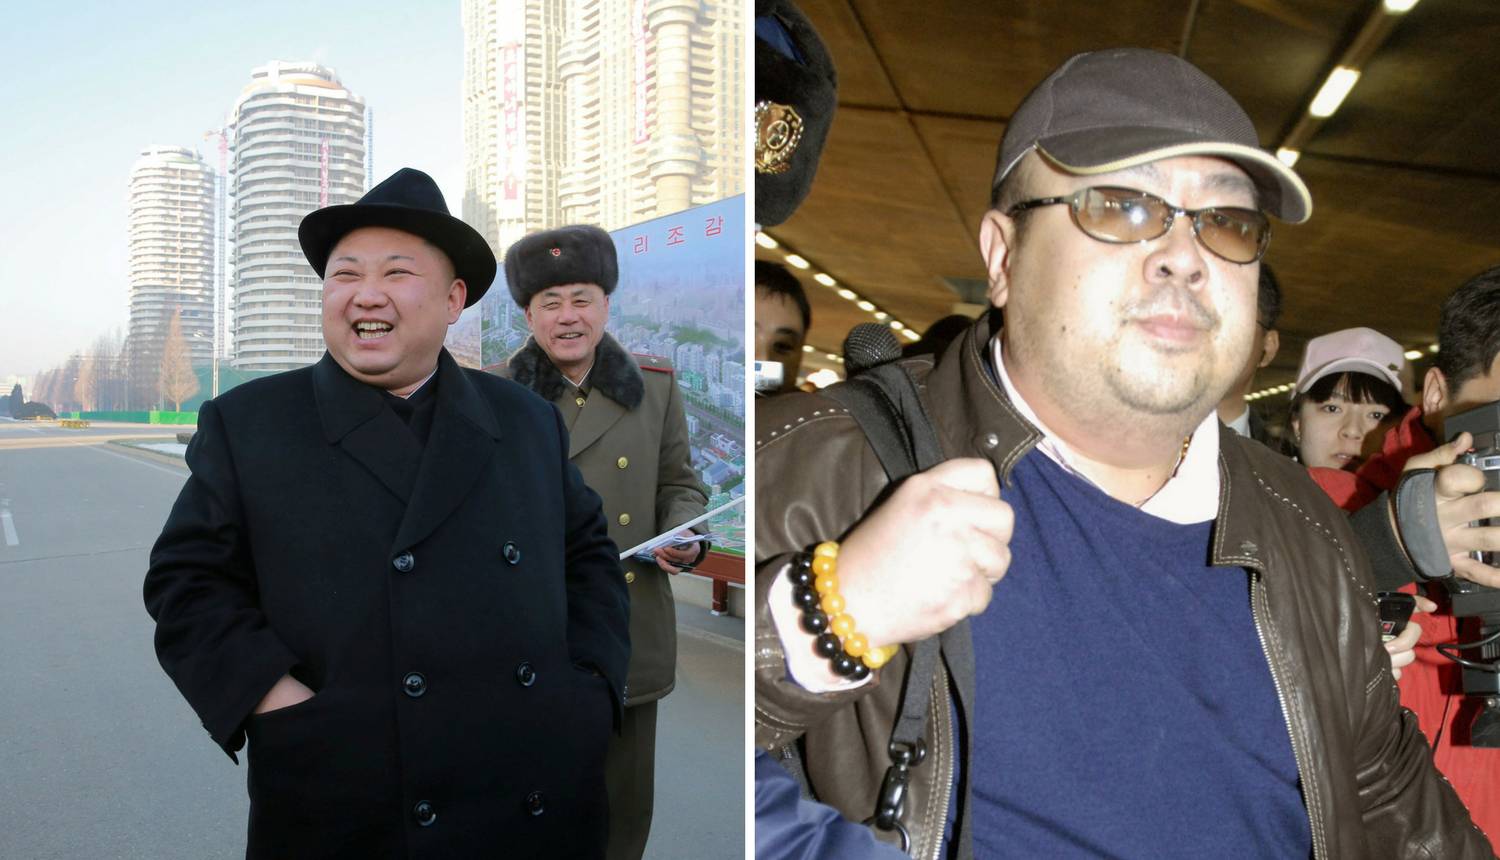 Ubojstvo Kim Jong Nama: Lov na četvero osumnjičenih ljudi